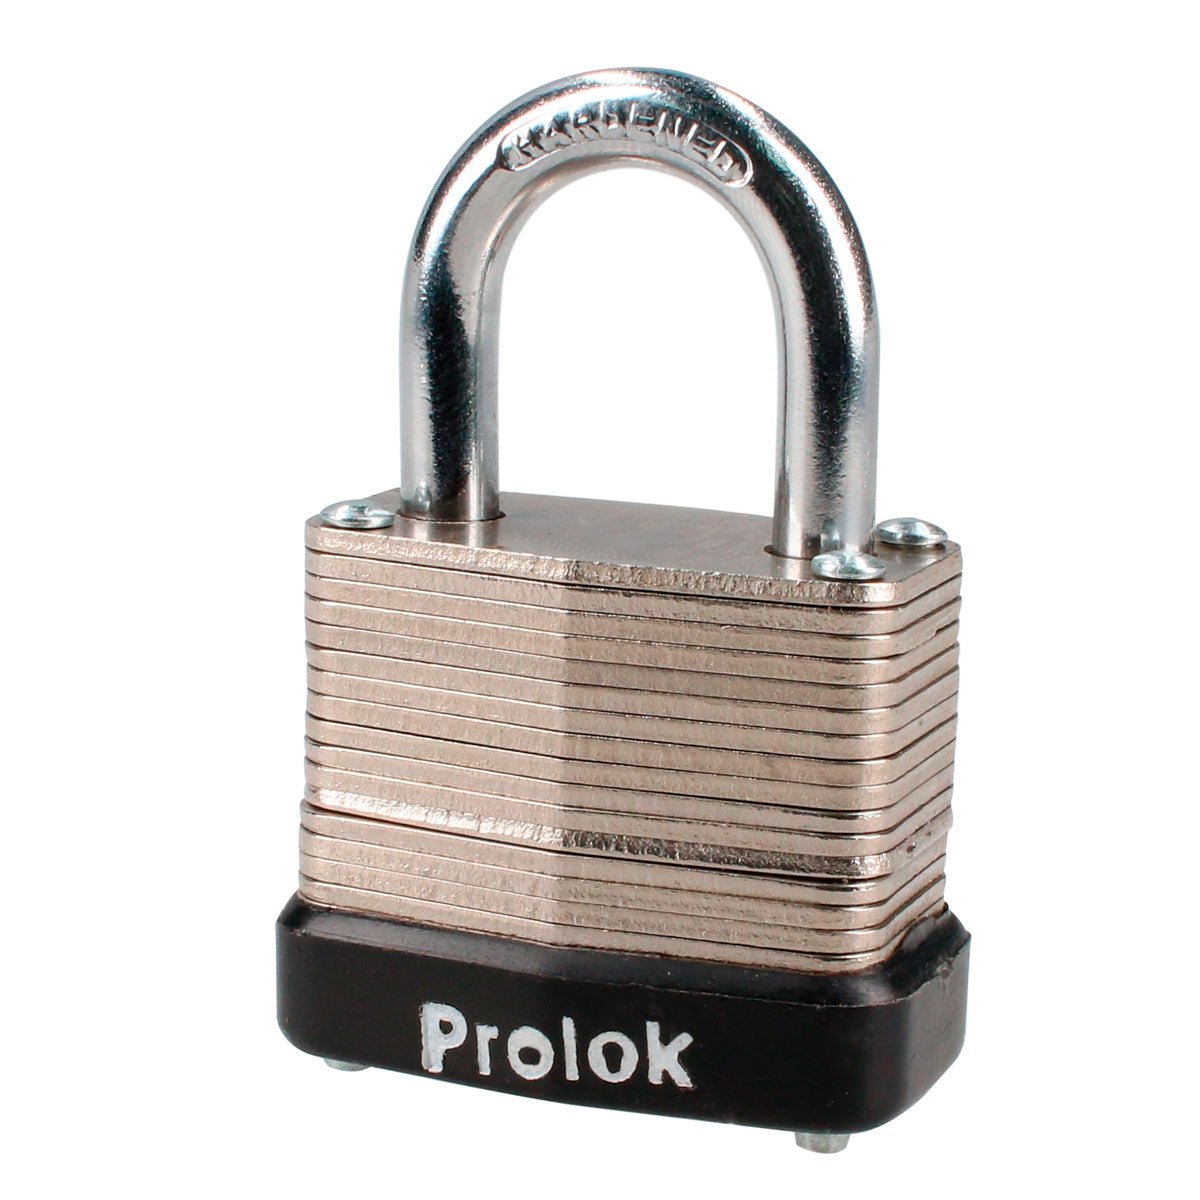 Candado laminado corto, llave estándar Prolok - FERRETERÍA WITZI